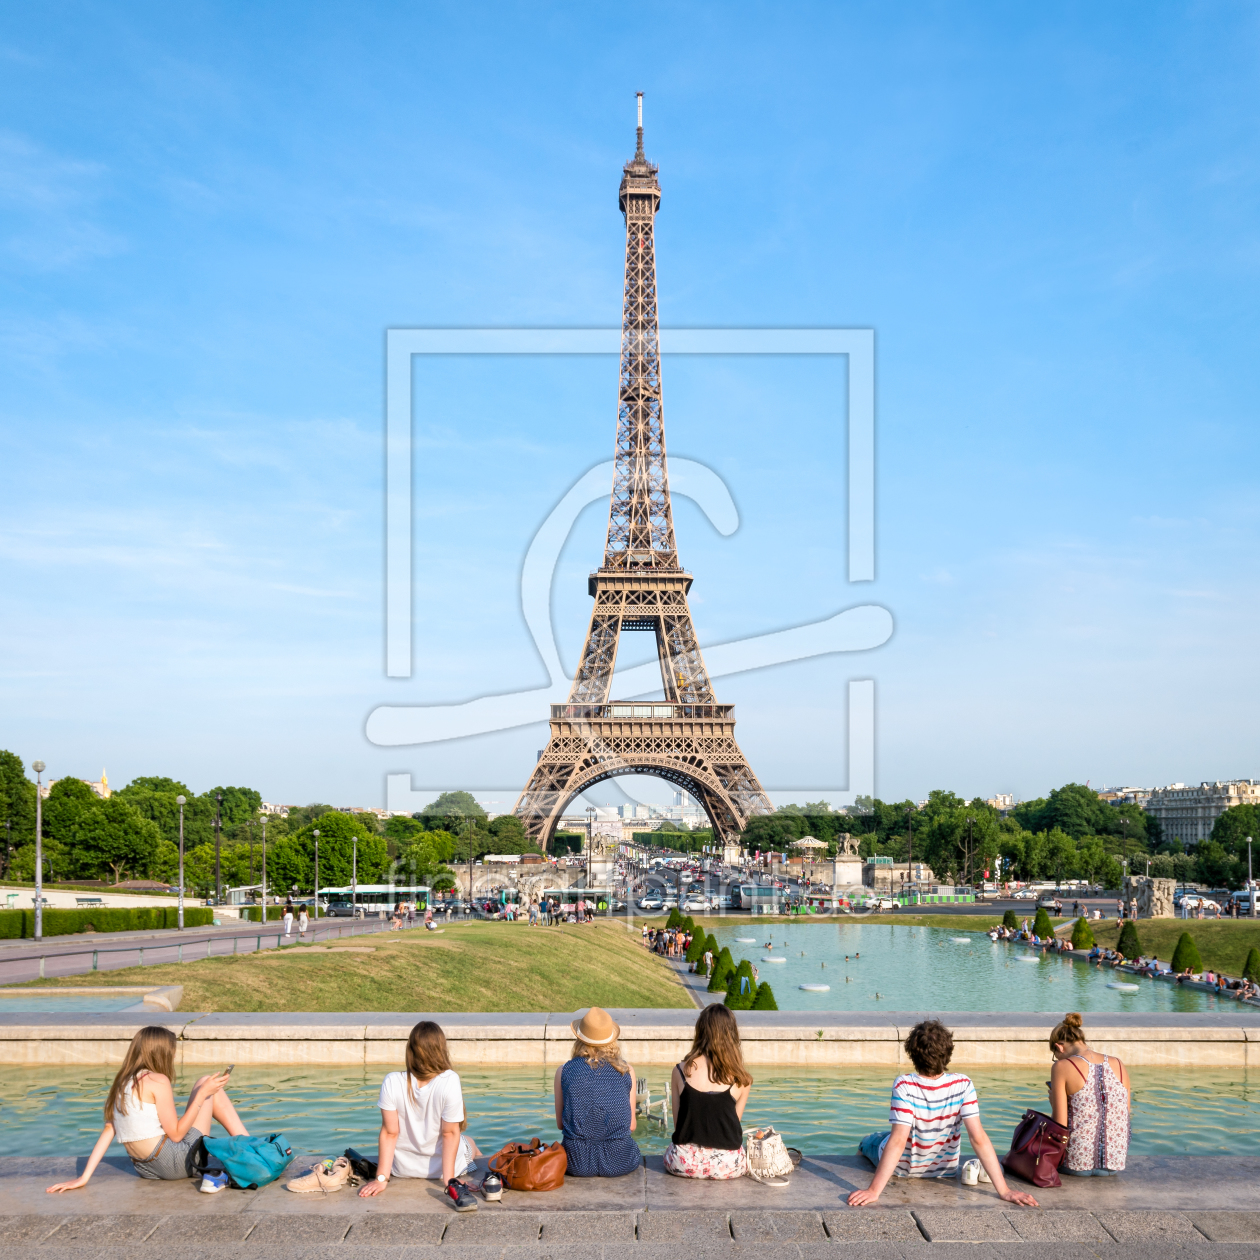 Bild-Nr.: 11970222 Eine Gruppe Touristen vor dem Eiffelturm in Paris erstellt von eyetronic